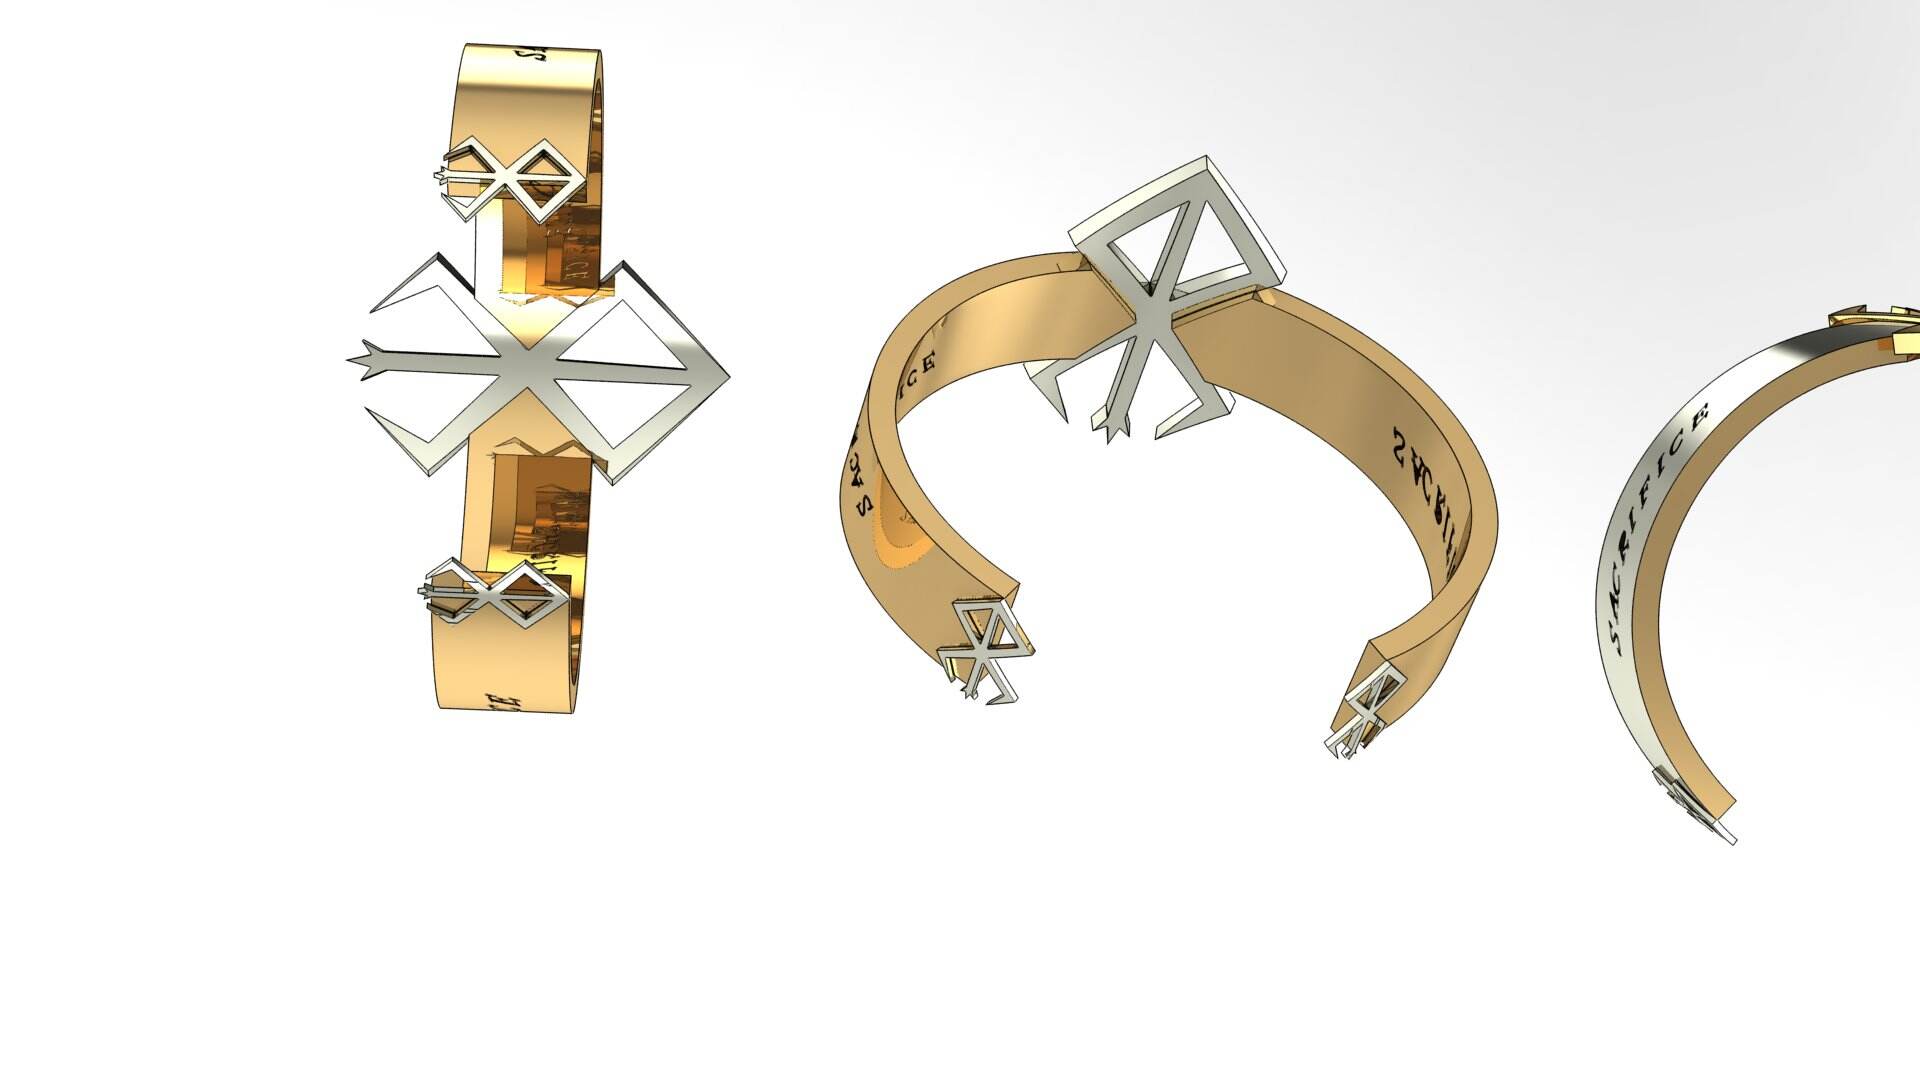 Louis Vuitton logo cuff bracelet 3D model 3D printable